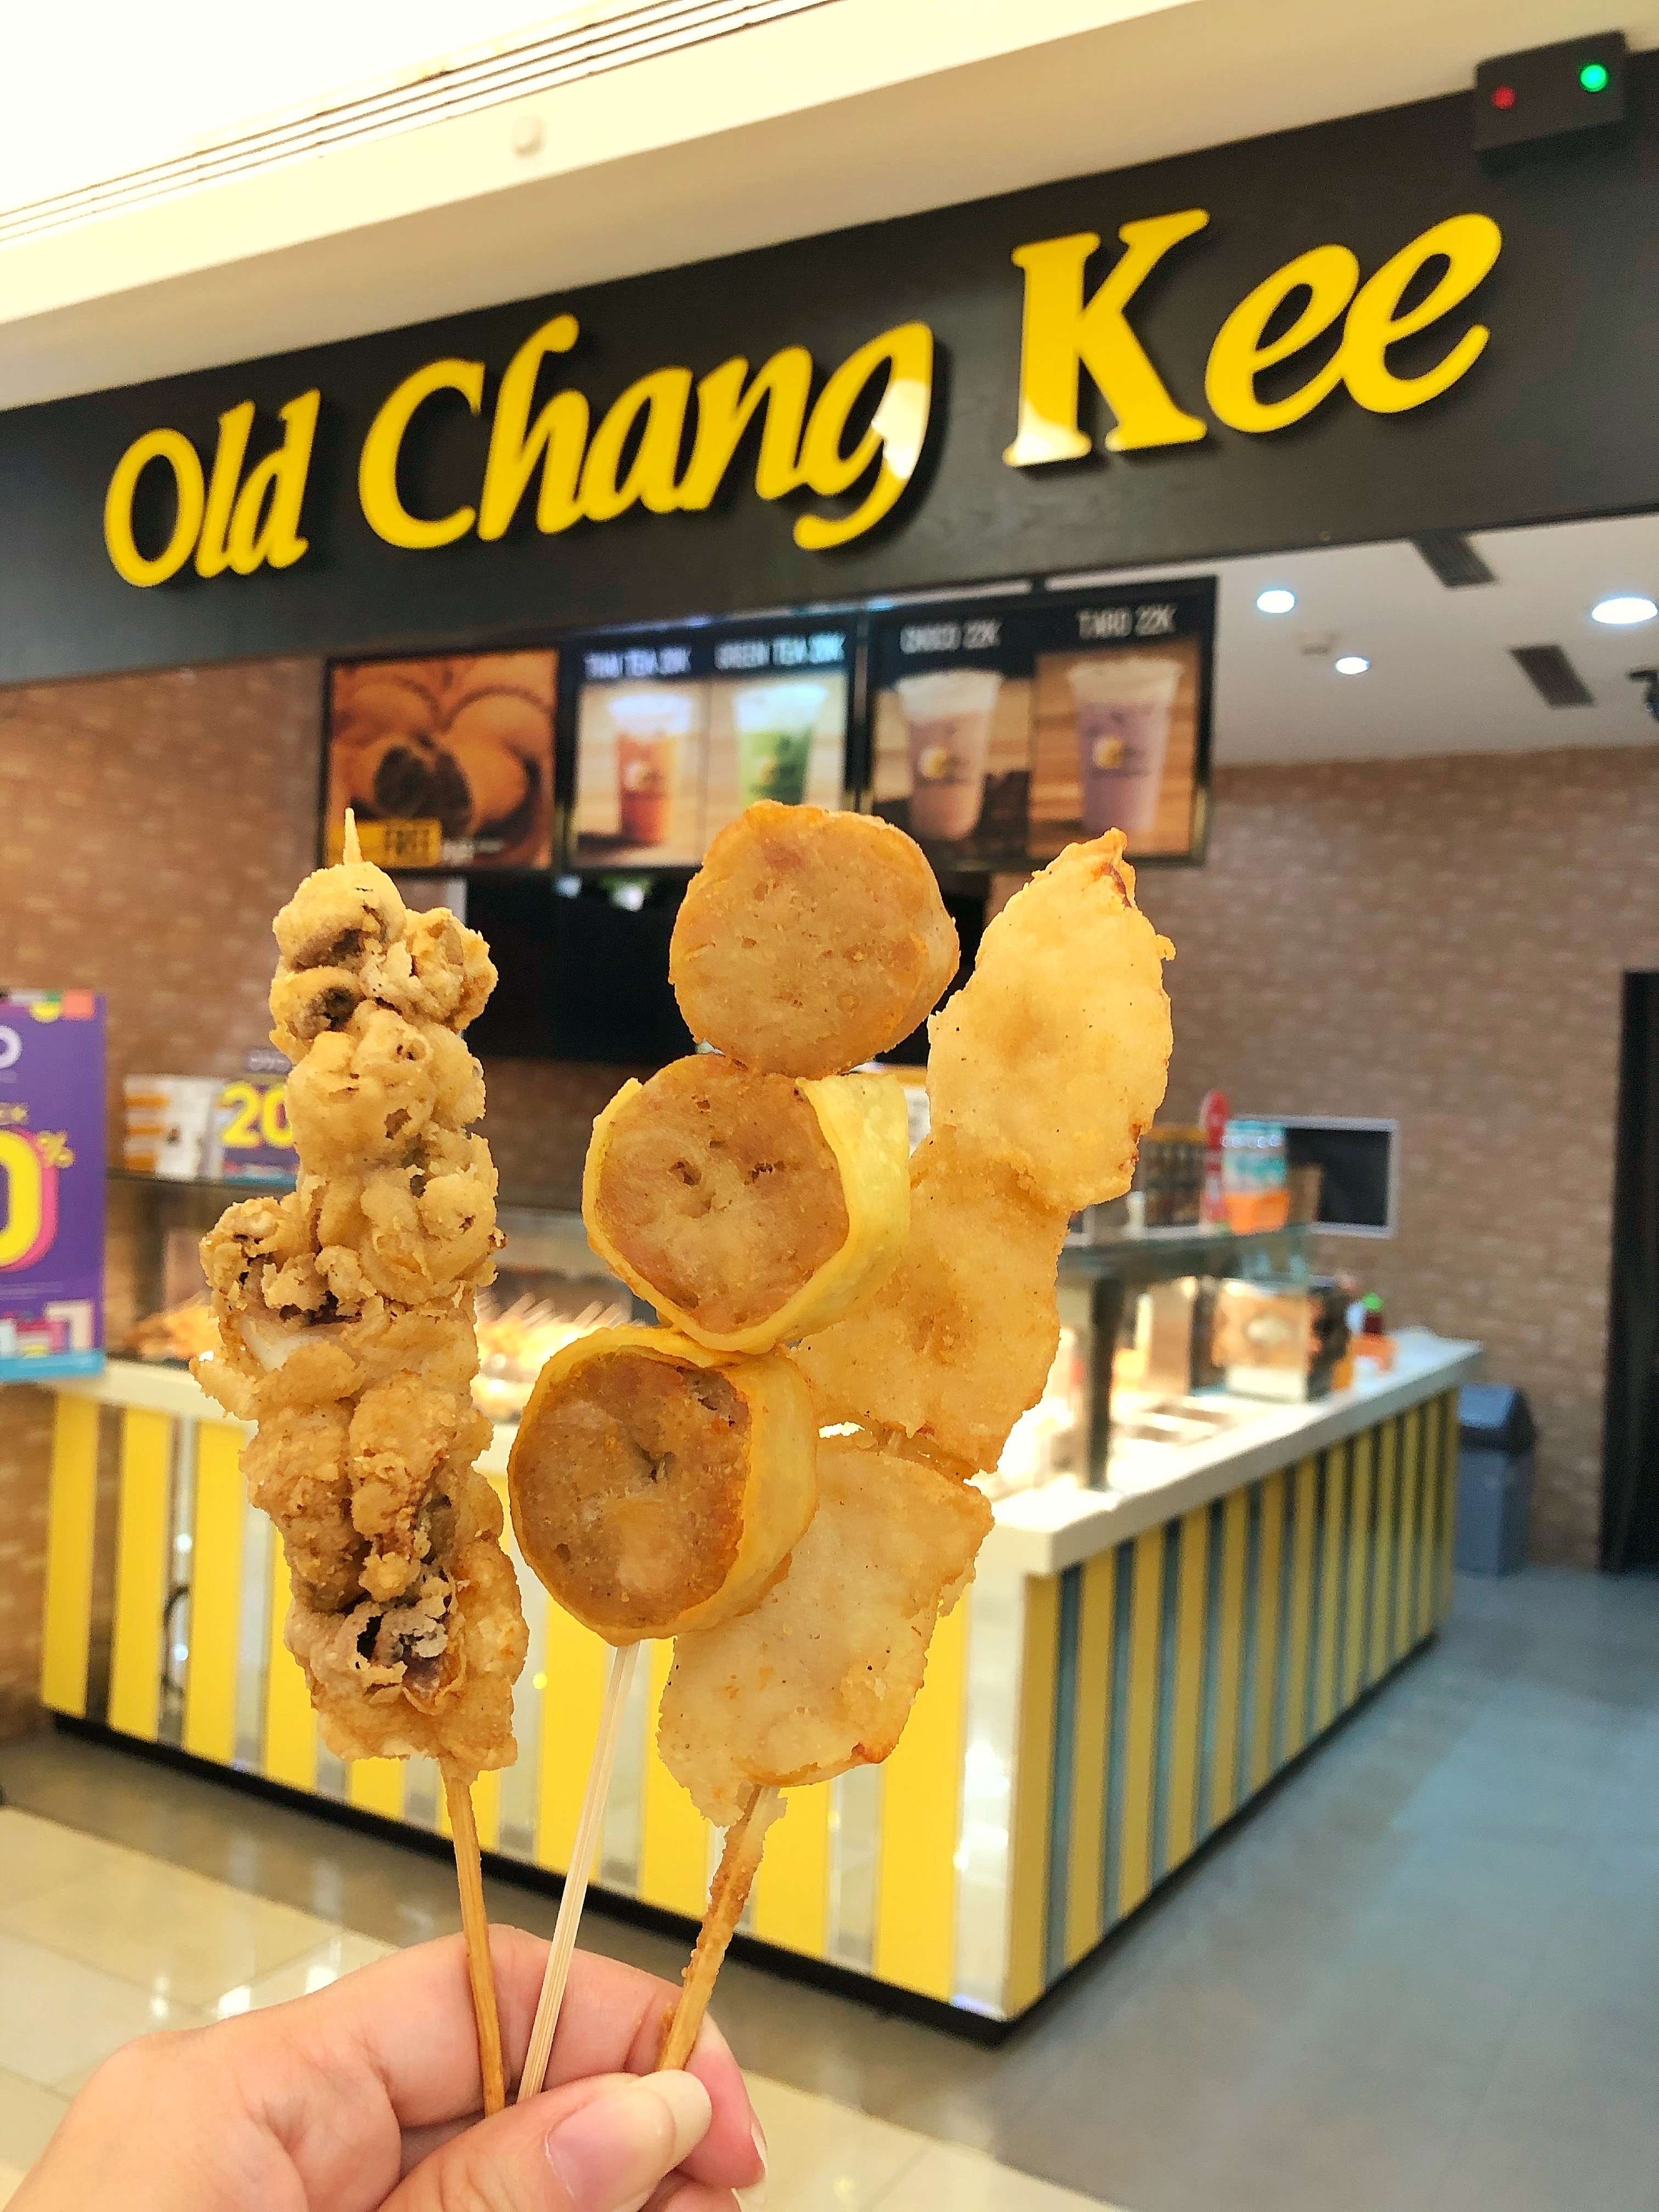 Kee old chang Old Chang